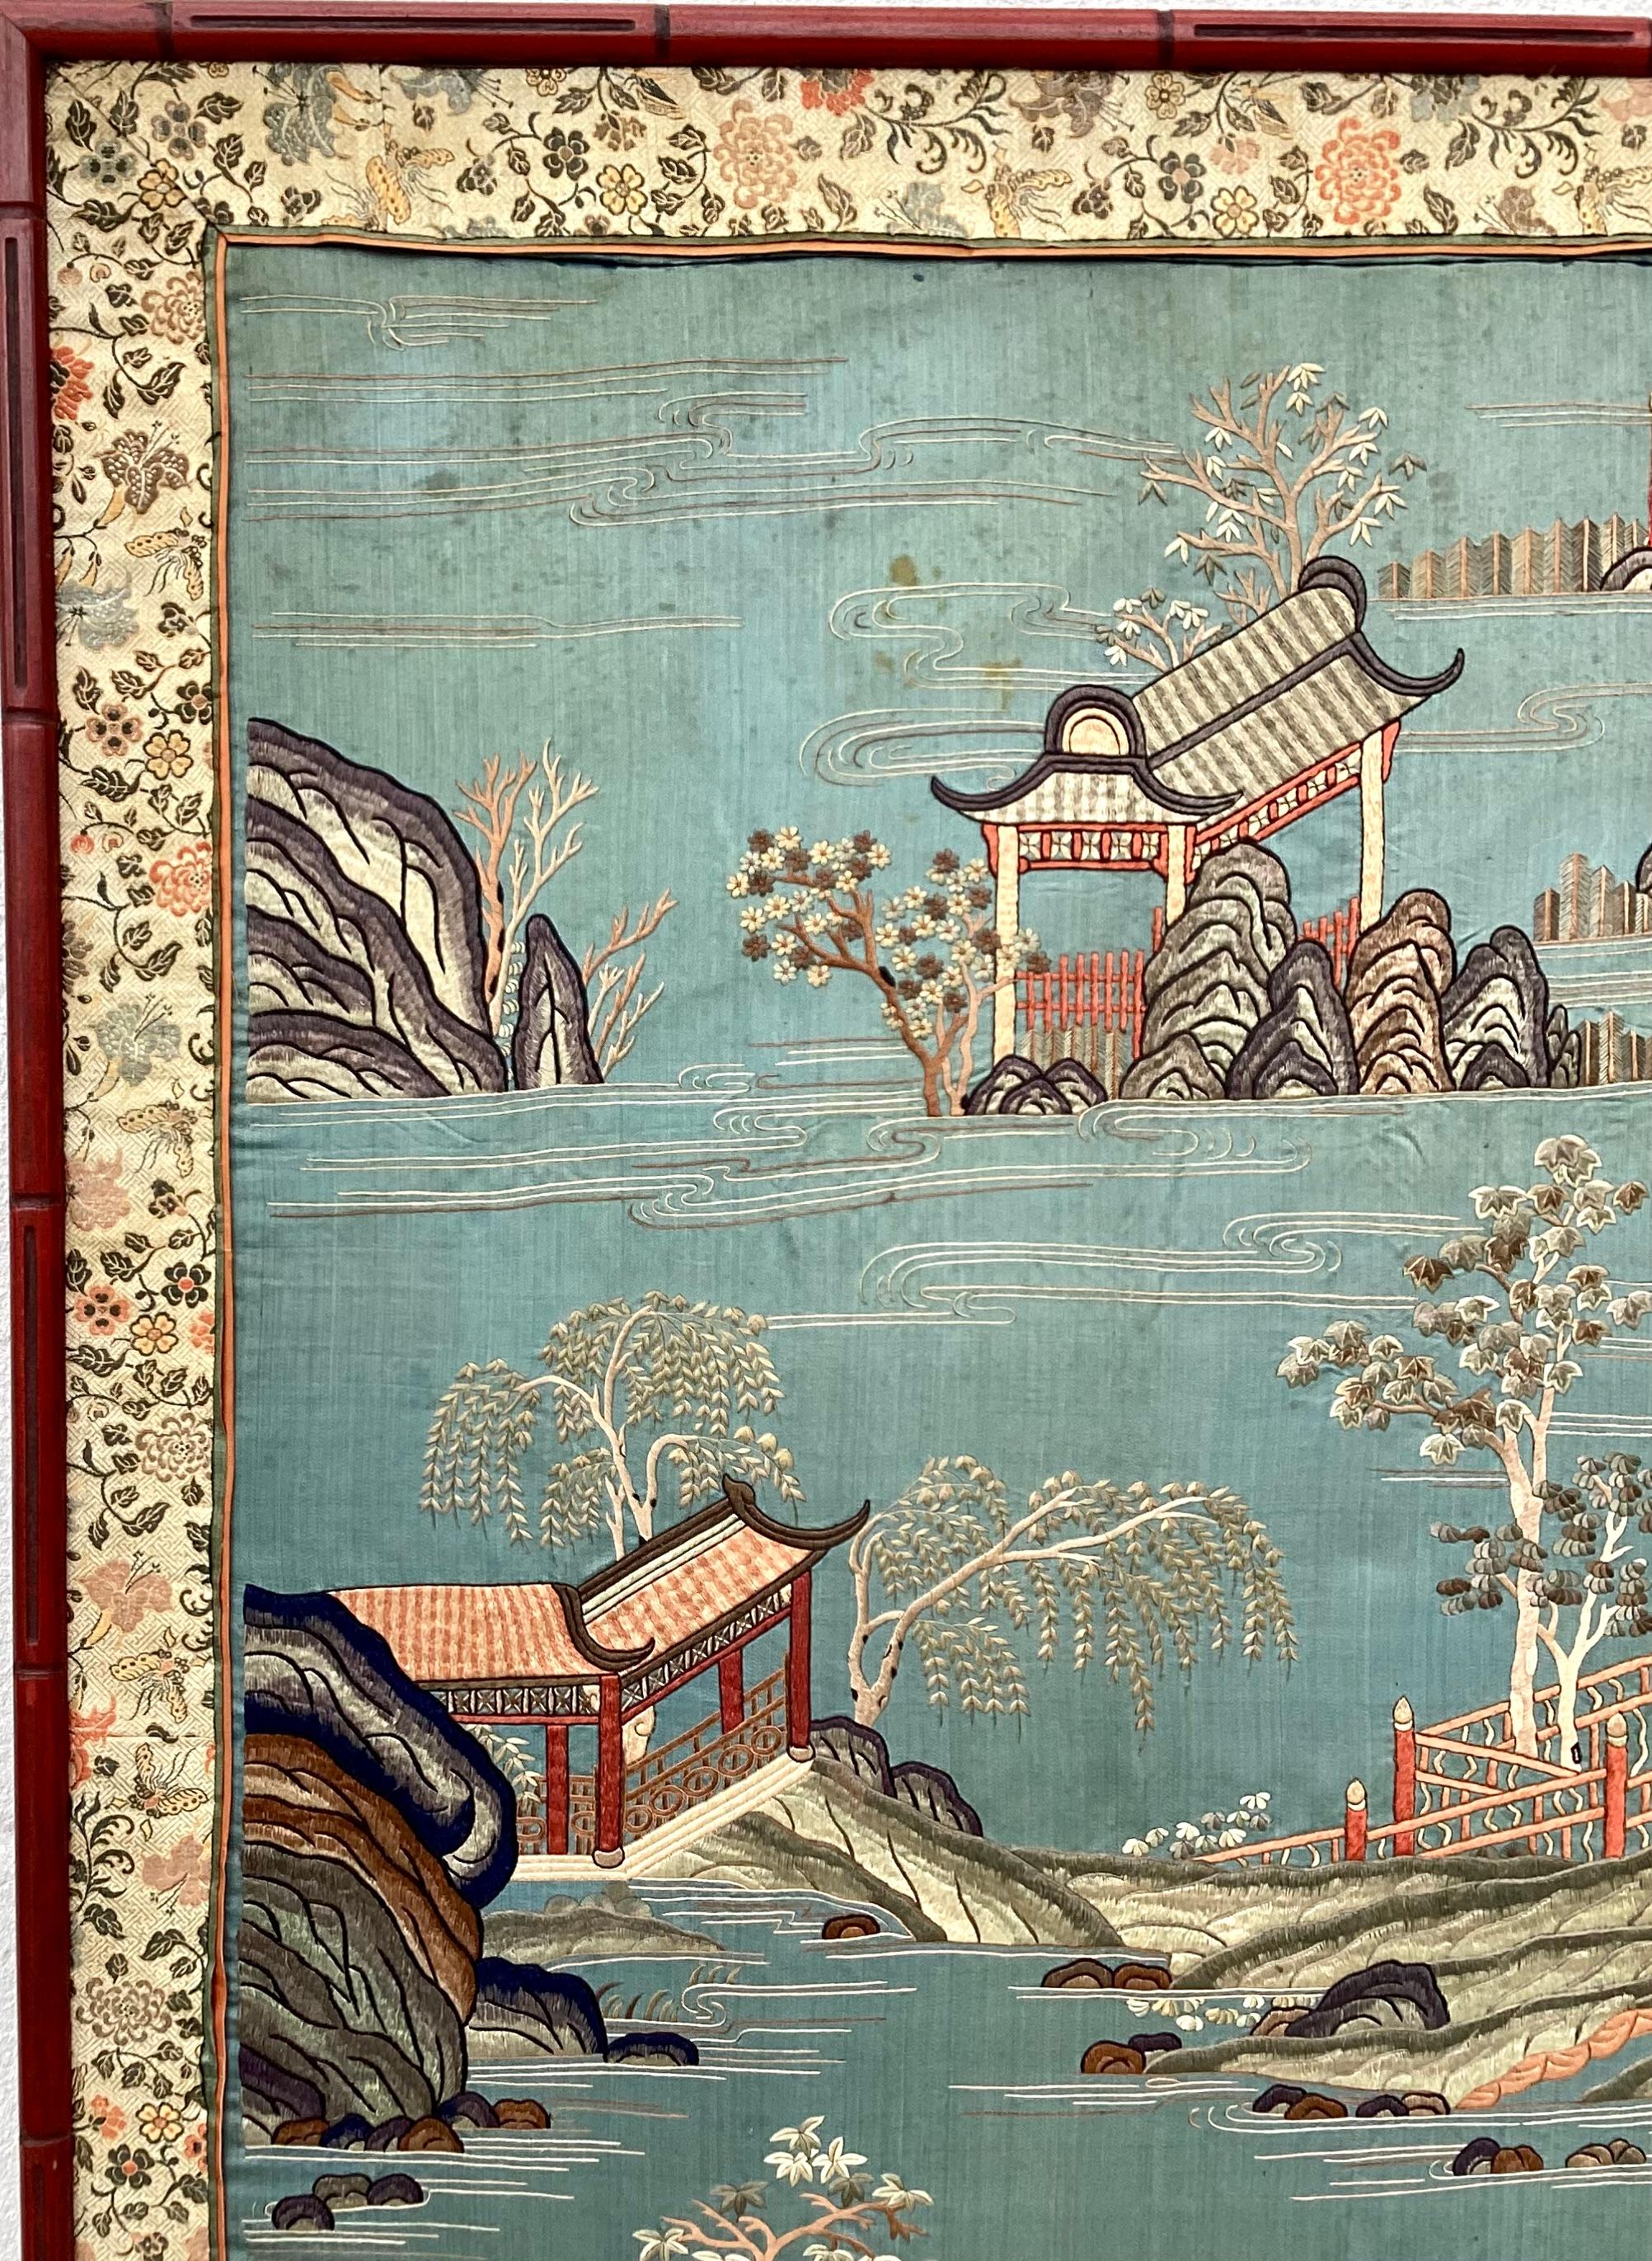 Cette grande broderie de soie chinoise représente des personnages asiatiques et des scènes de bateaux, de ponts et de paysages asiatiques. Whiting présente des couleurs rouge, vert, saumon et blanc sur un magnifique fond bleu serein. Il est encadré